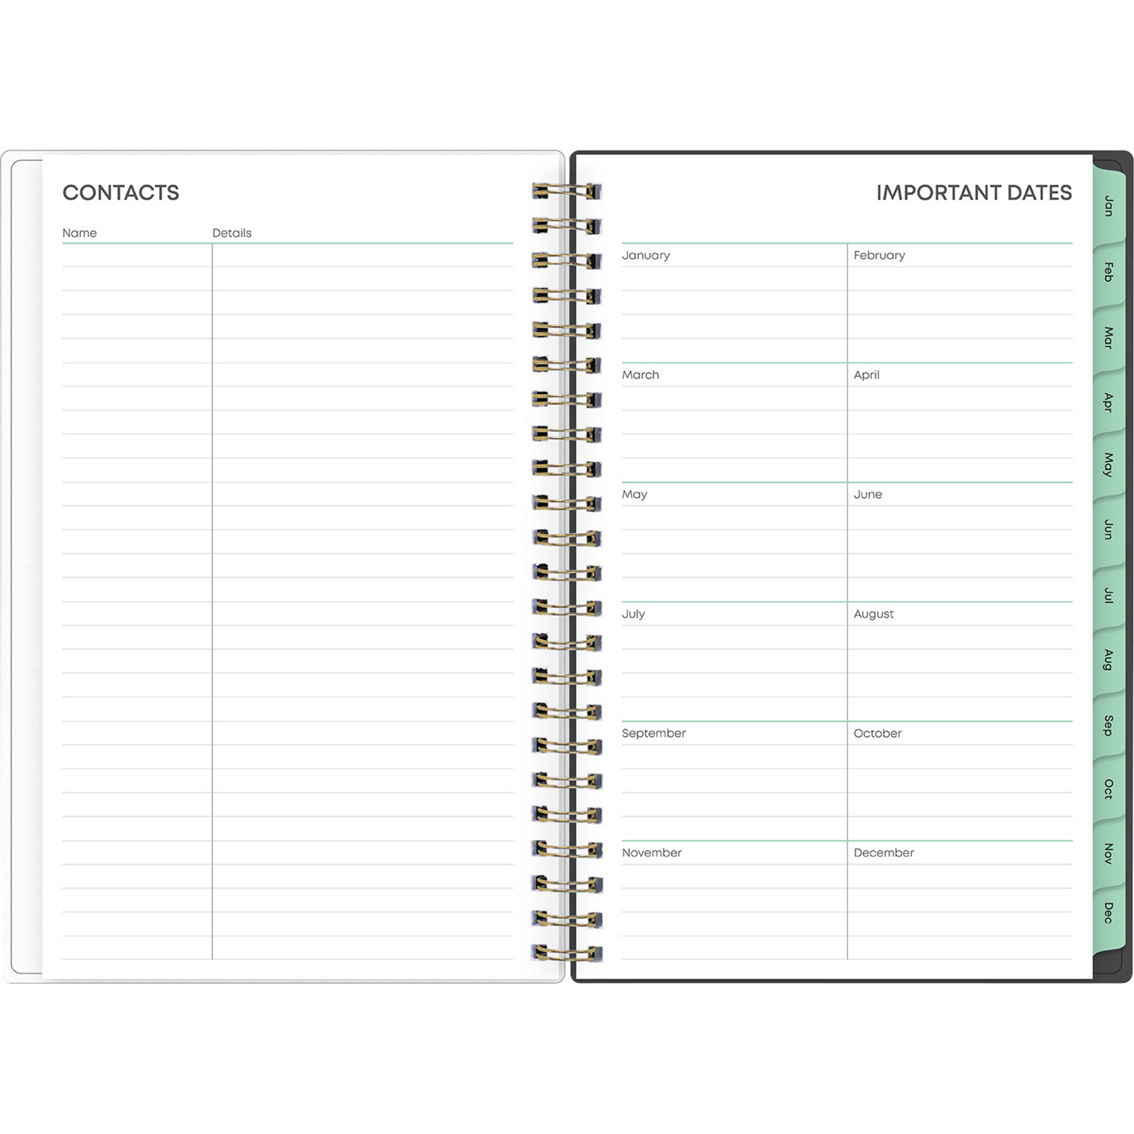 Bluesky Planning Calendar, Sophie Floral Pattern - Image 5 of 8